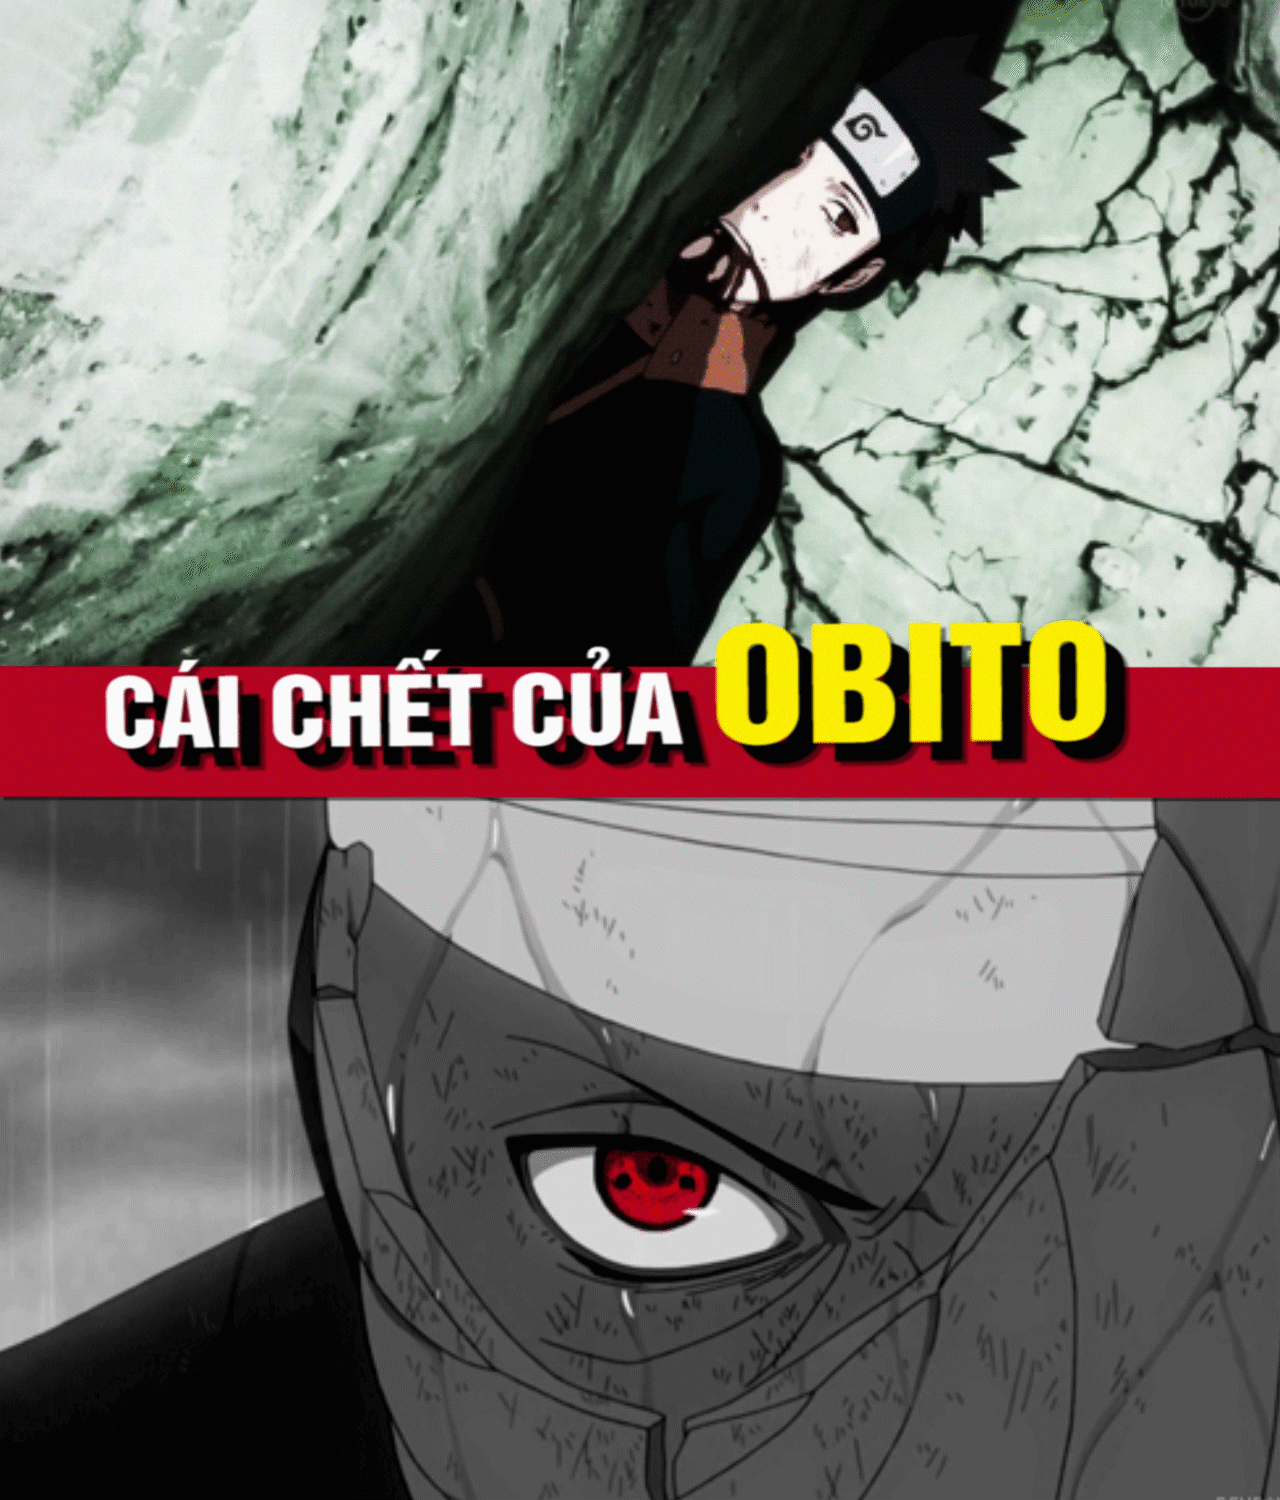 Cái chết đau lòng của các nhân vật trong Naruto là một phần không thể thiếu trong các chương trình. Tuy nhiên, cái chết của Obito khiến nhiều người cảm thấy xót xa vì sự thất bại của một anh hùng. Xem lại các tập phim của Naruto để cảm nhận được nỗi đau của Obito.